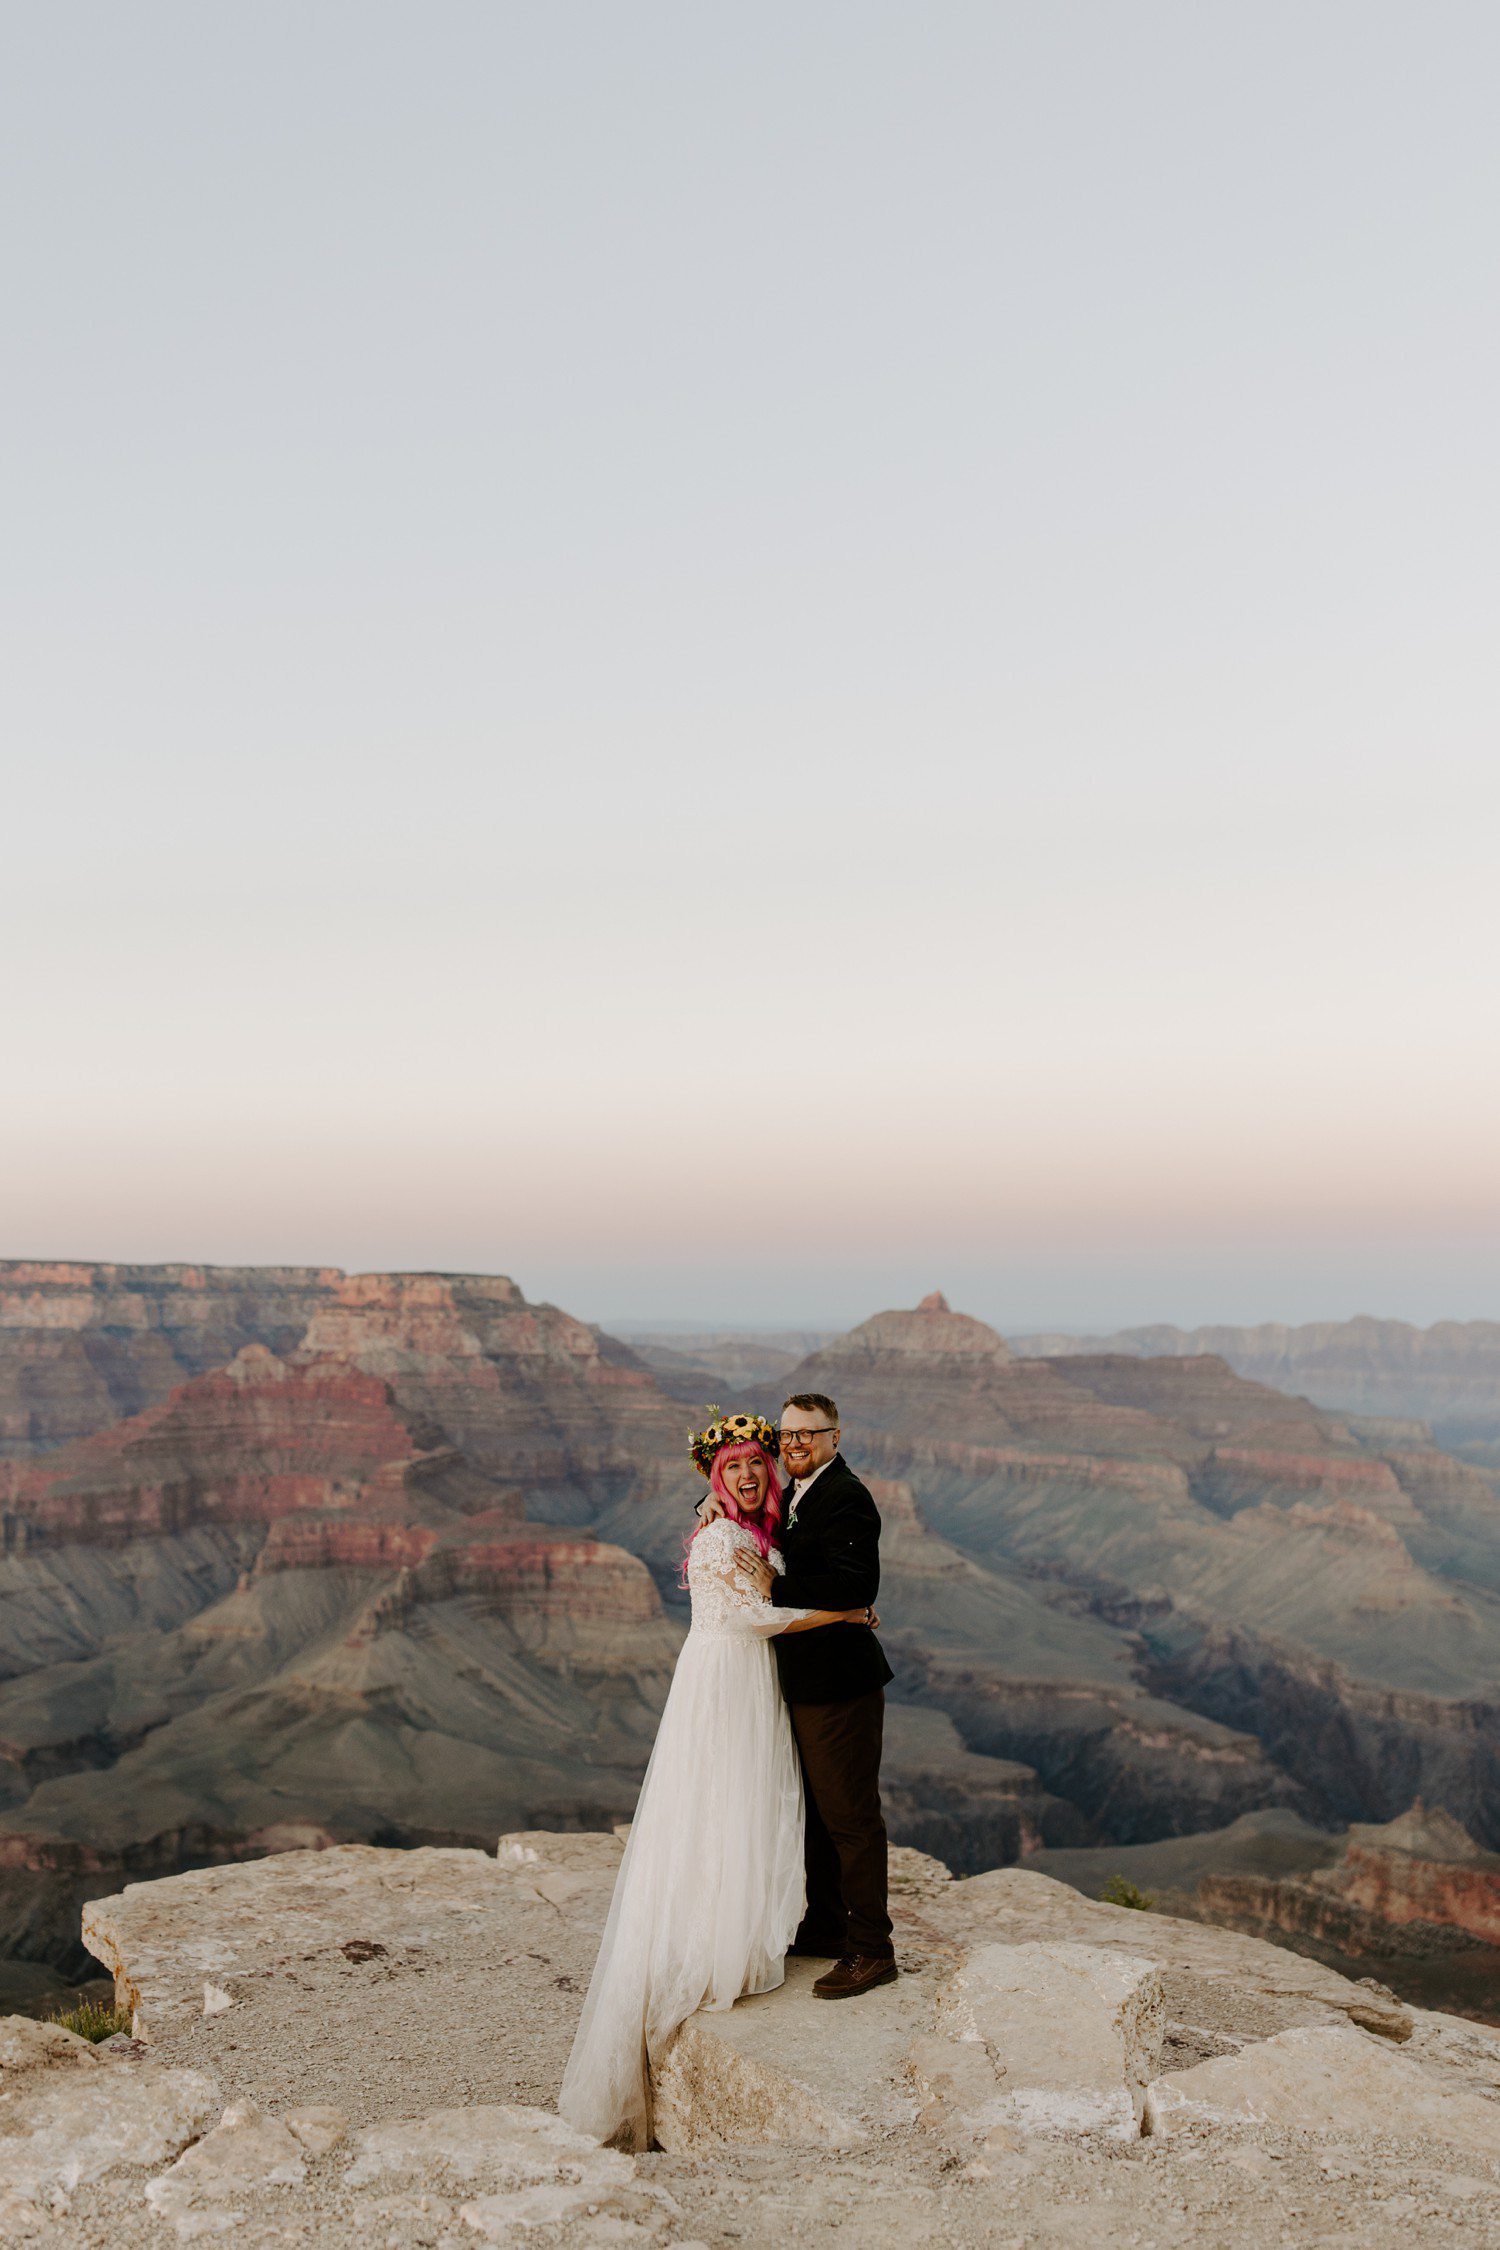 Wedding Photos at the Grand Canyon